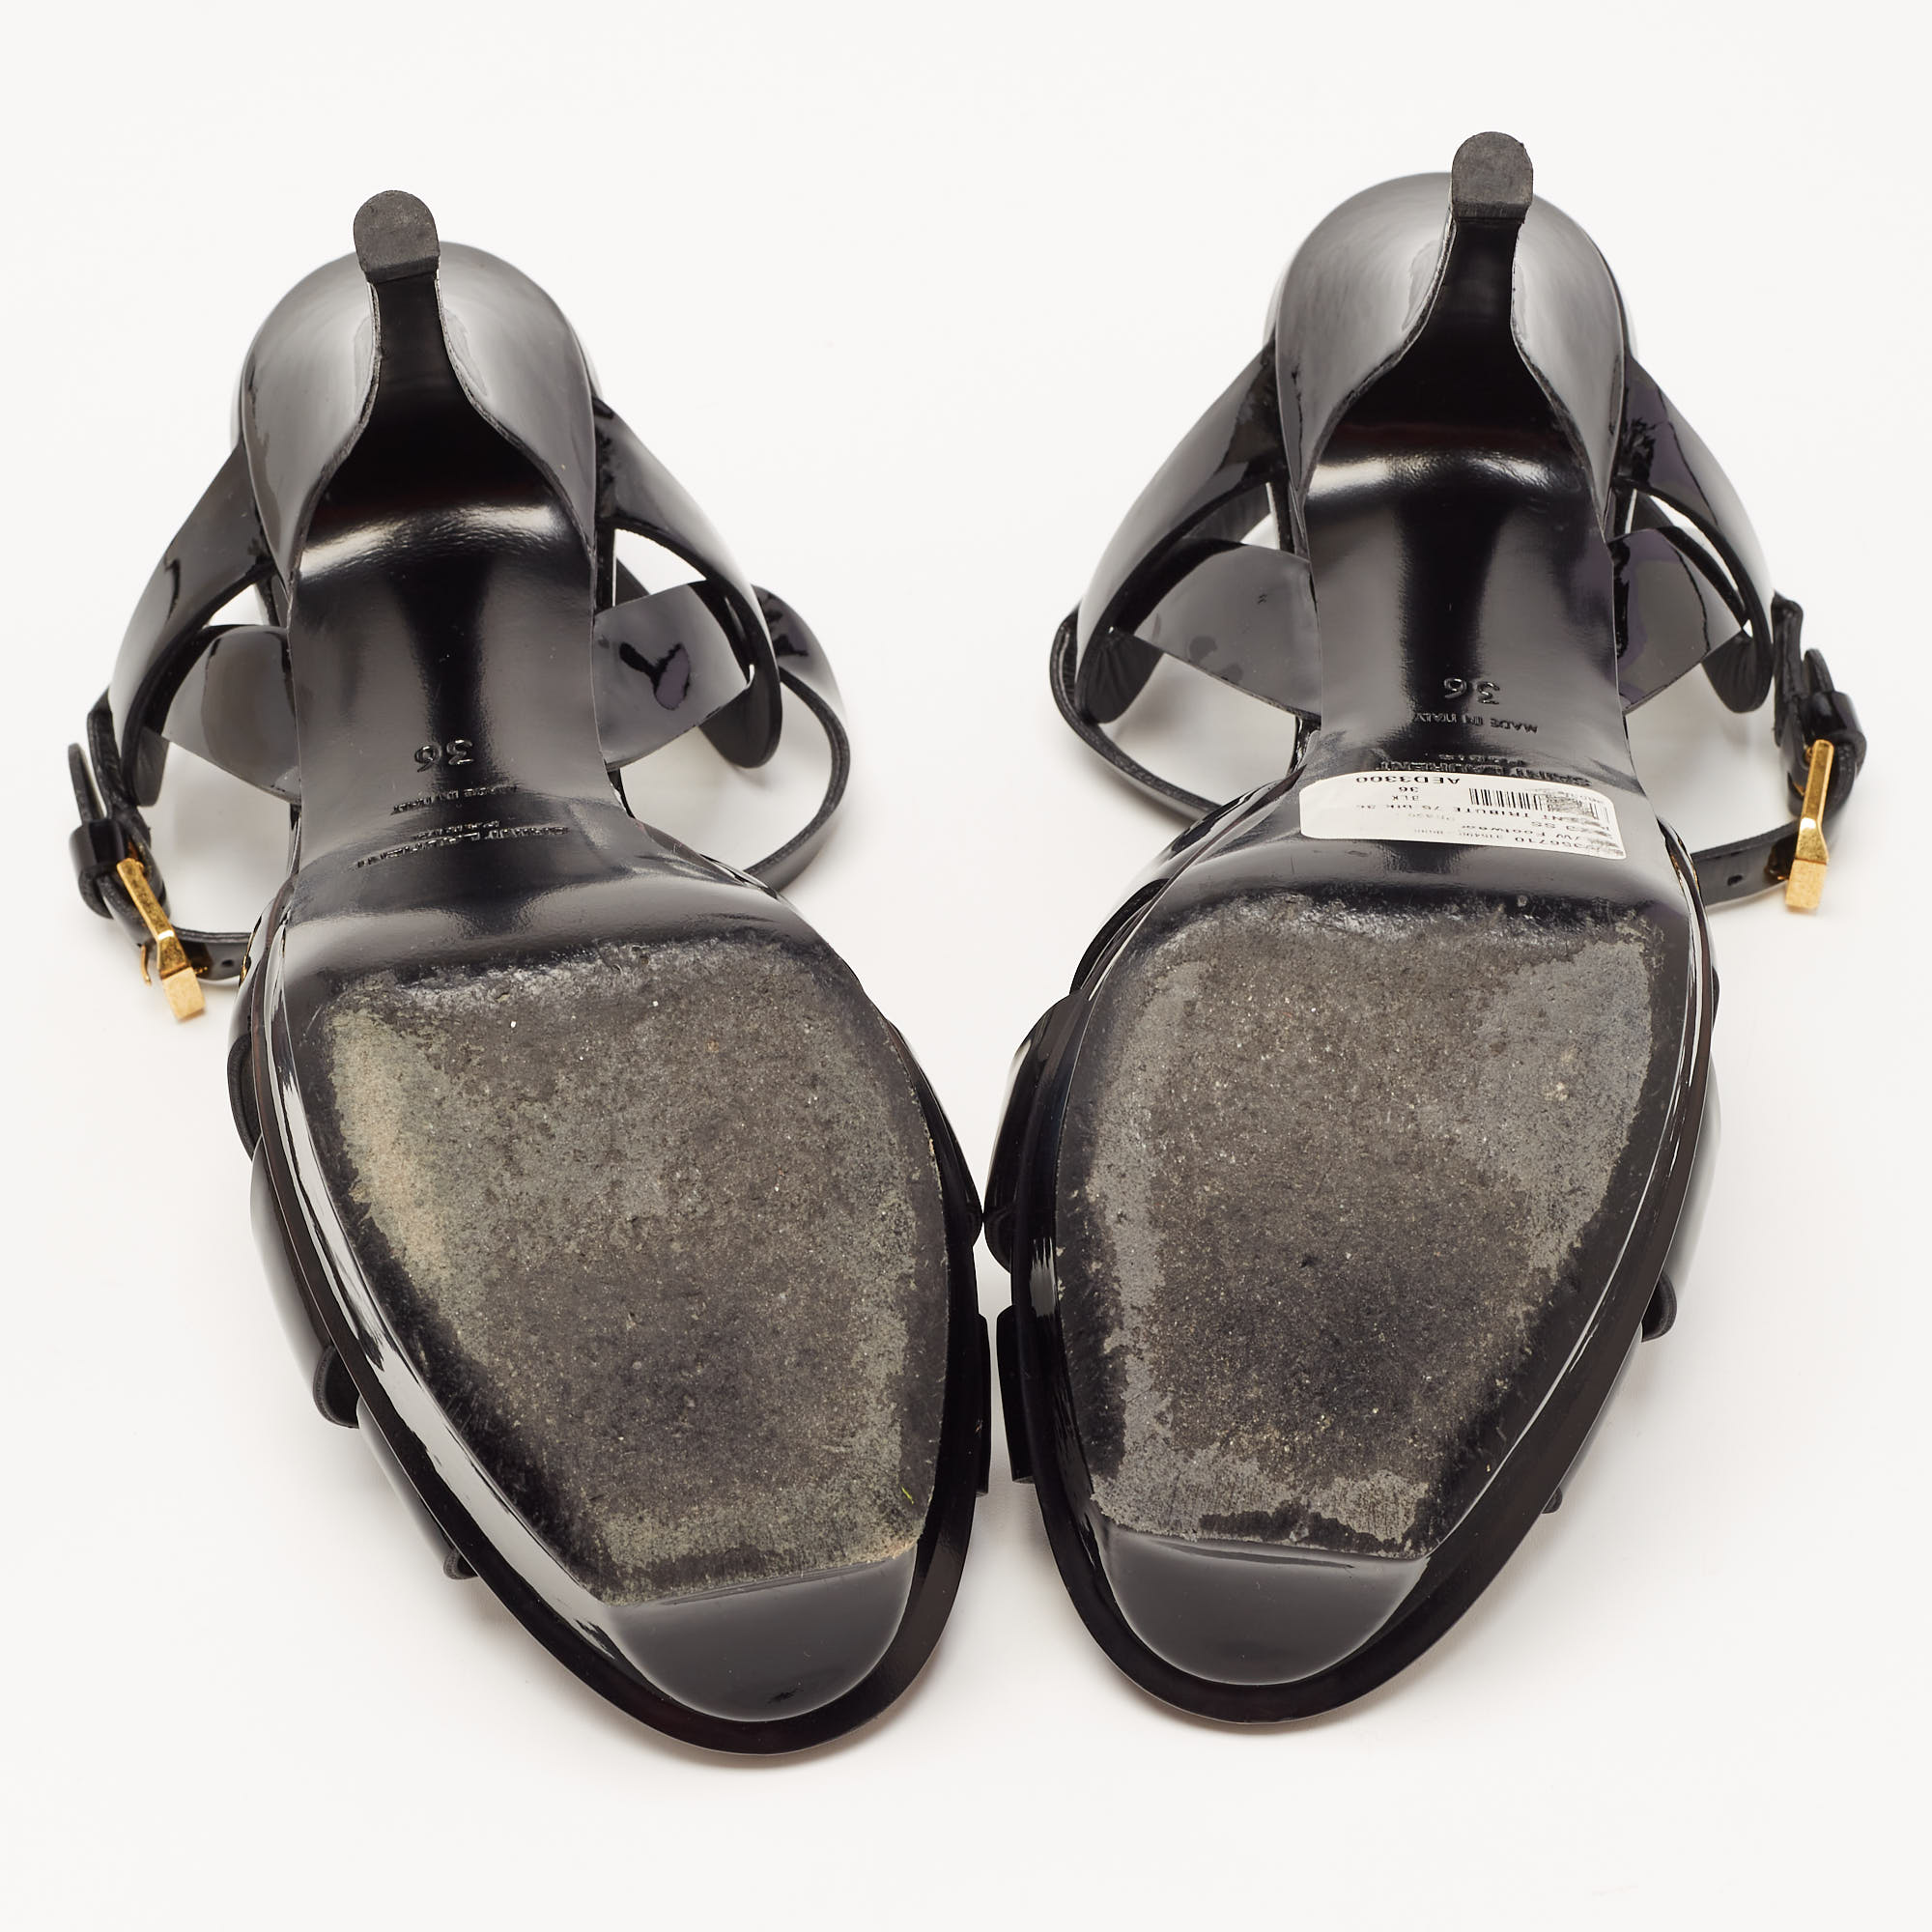 Yves Saint Laurent Black Patent Tribute Ankle Strap Sandals Size 36